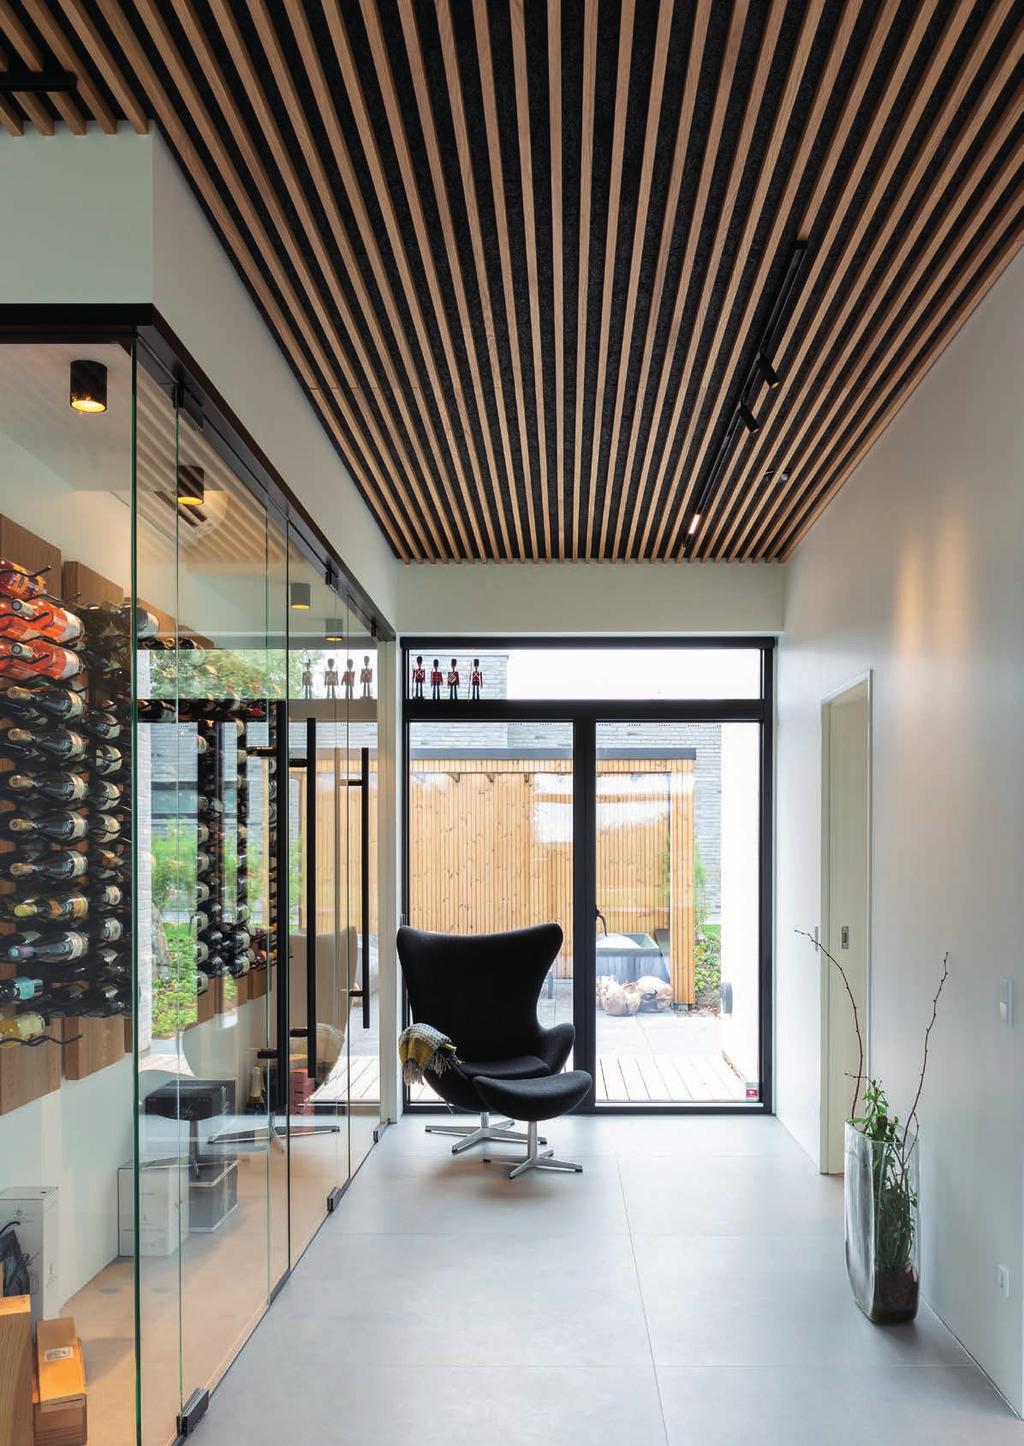 Et varmt hjem inspireret af verden Thomas Hansen har bygget sin drømmebolig på 300 kvadratmeter i Kolding med eksklusive